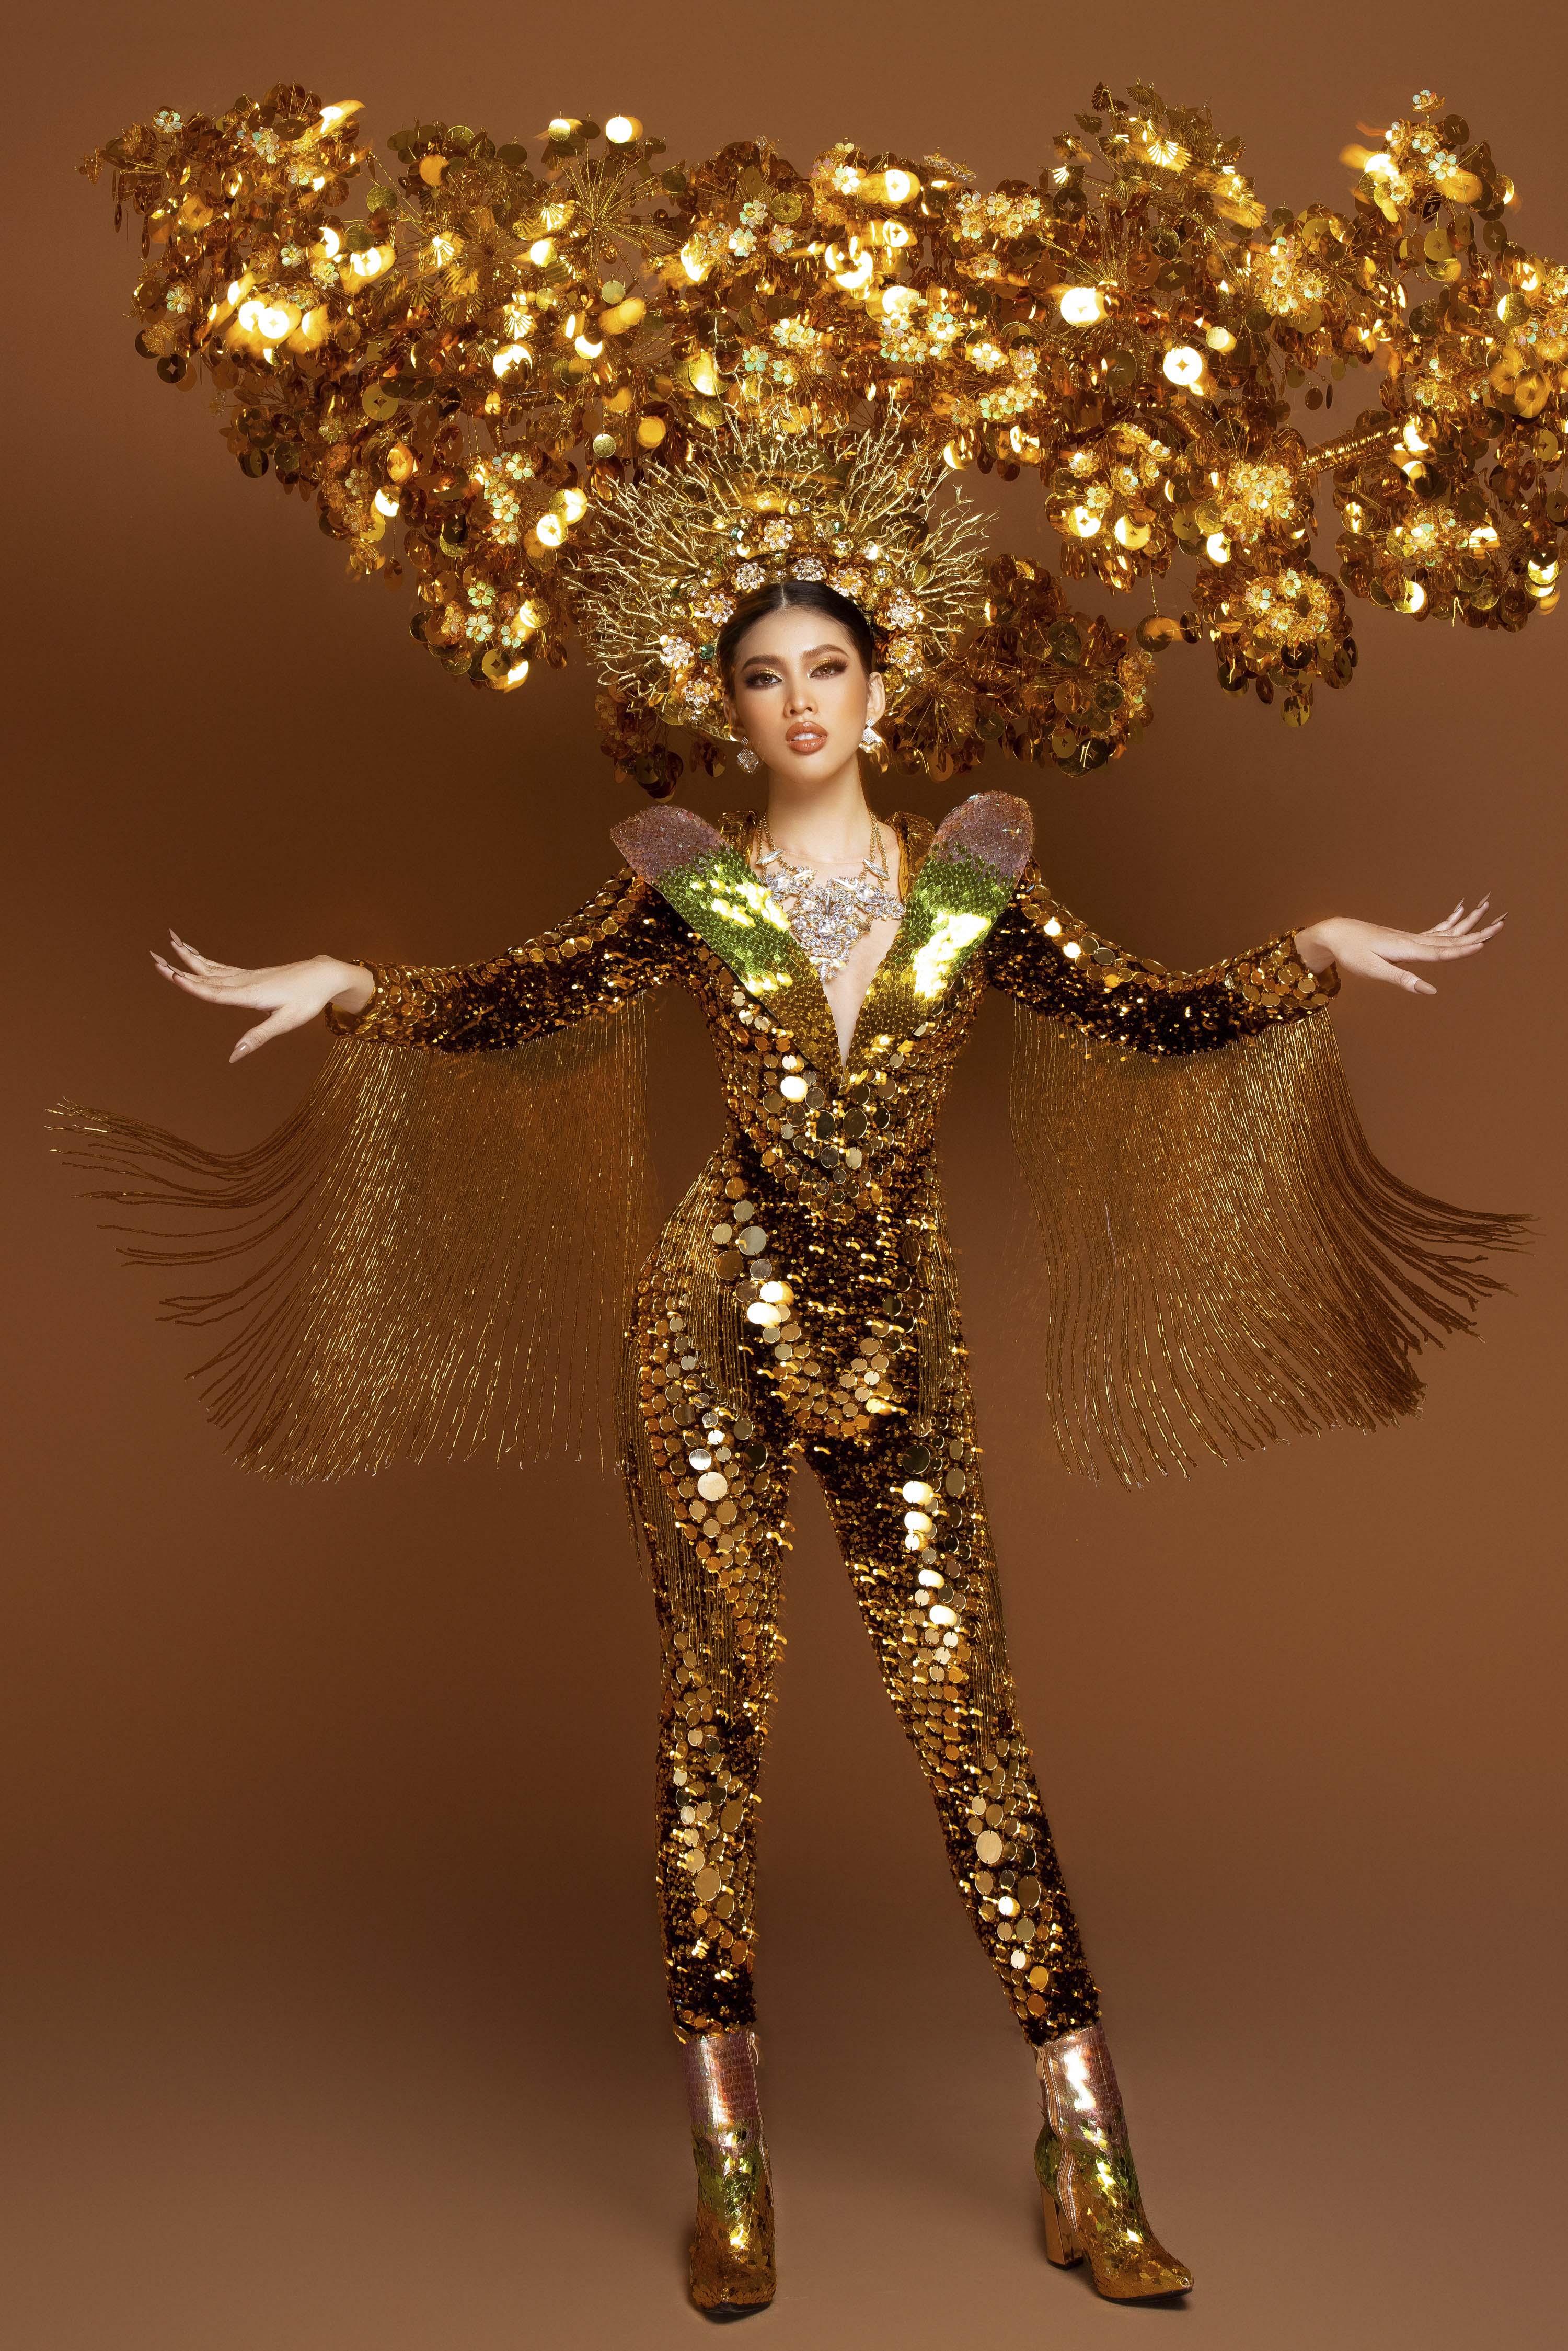 Á hậu Ngọc Thảo mang quốc phục nặng gần 30kg lên 'đấu trường' Miss Grand International 2020 - ảnh 1